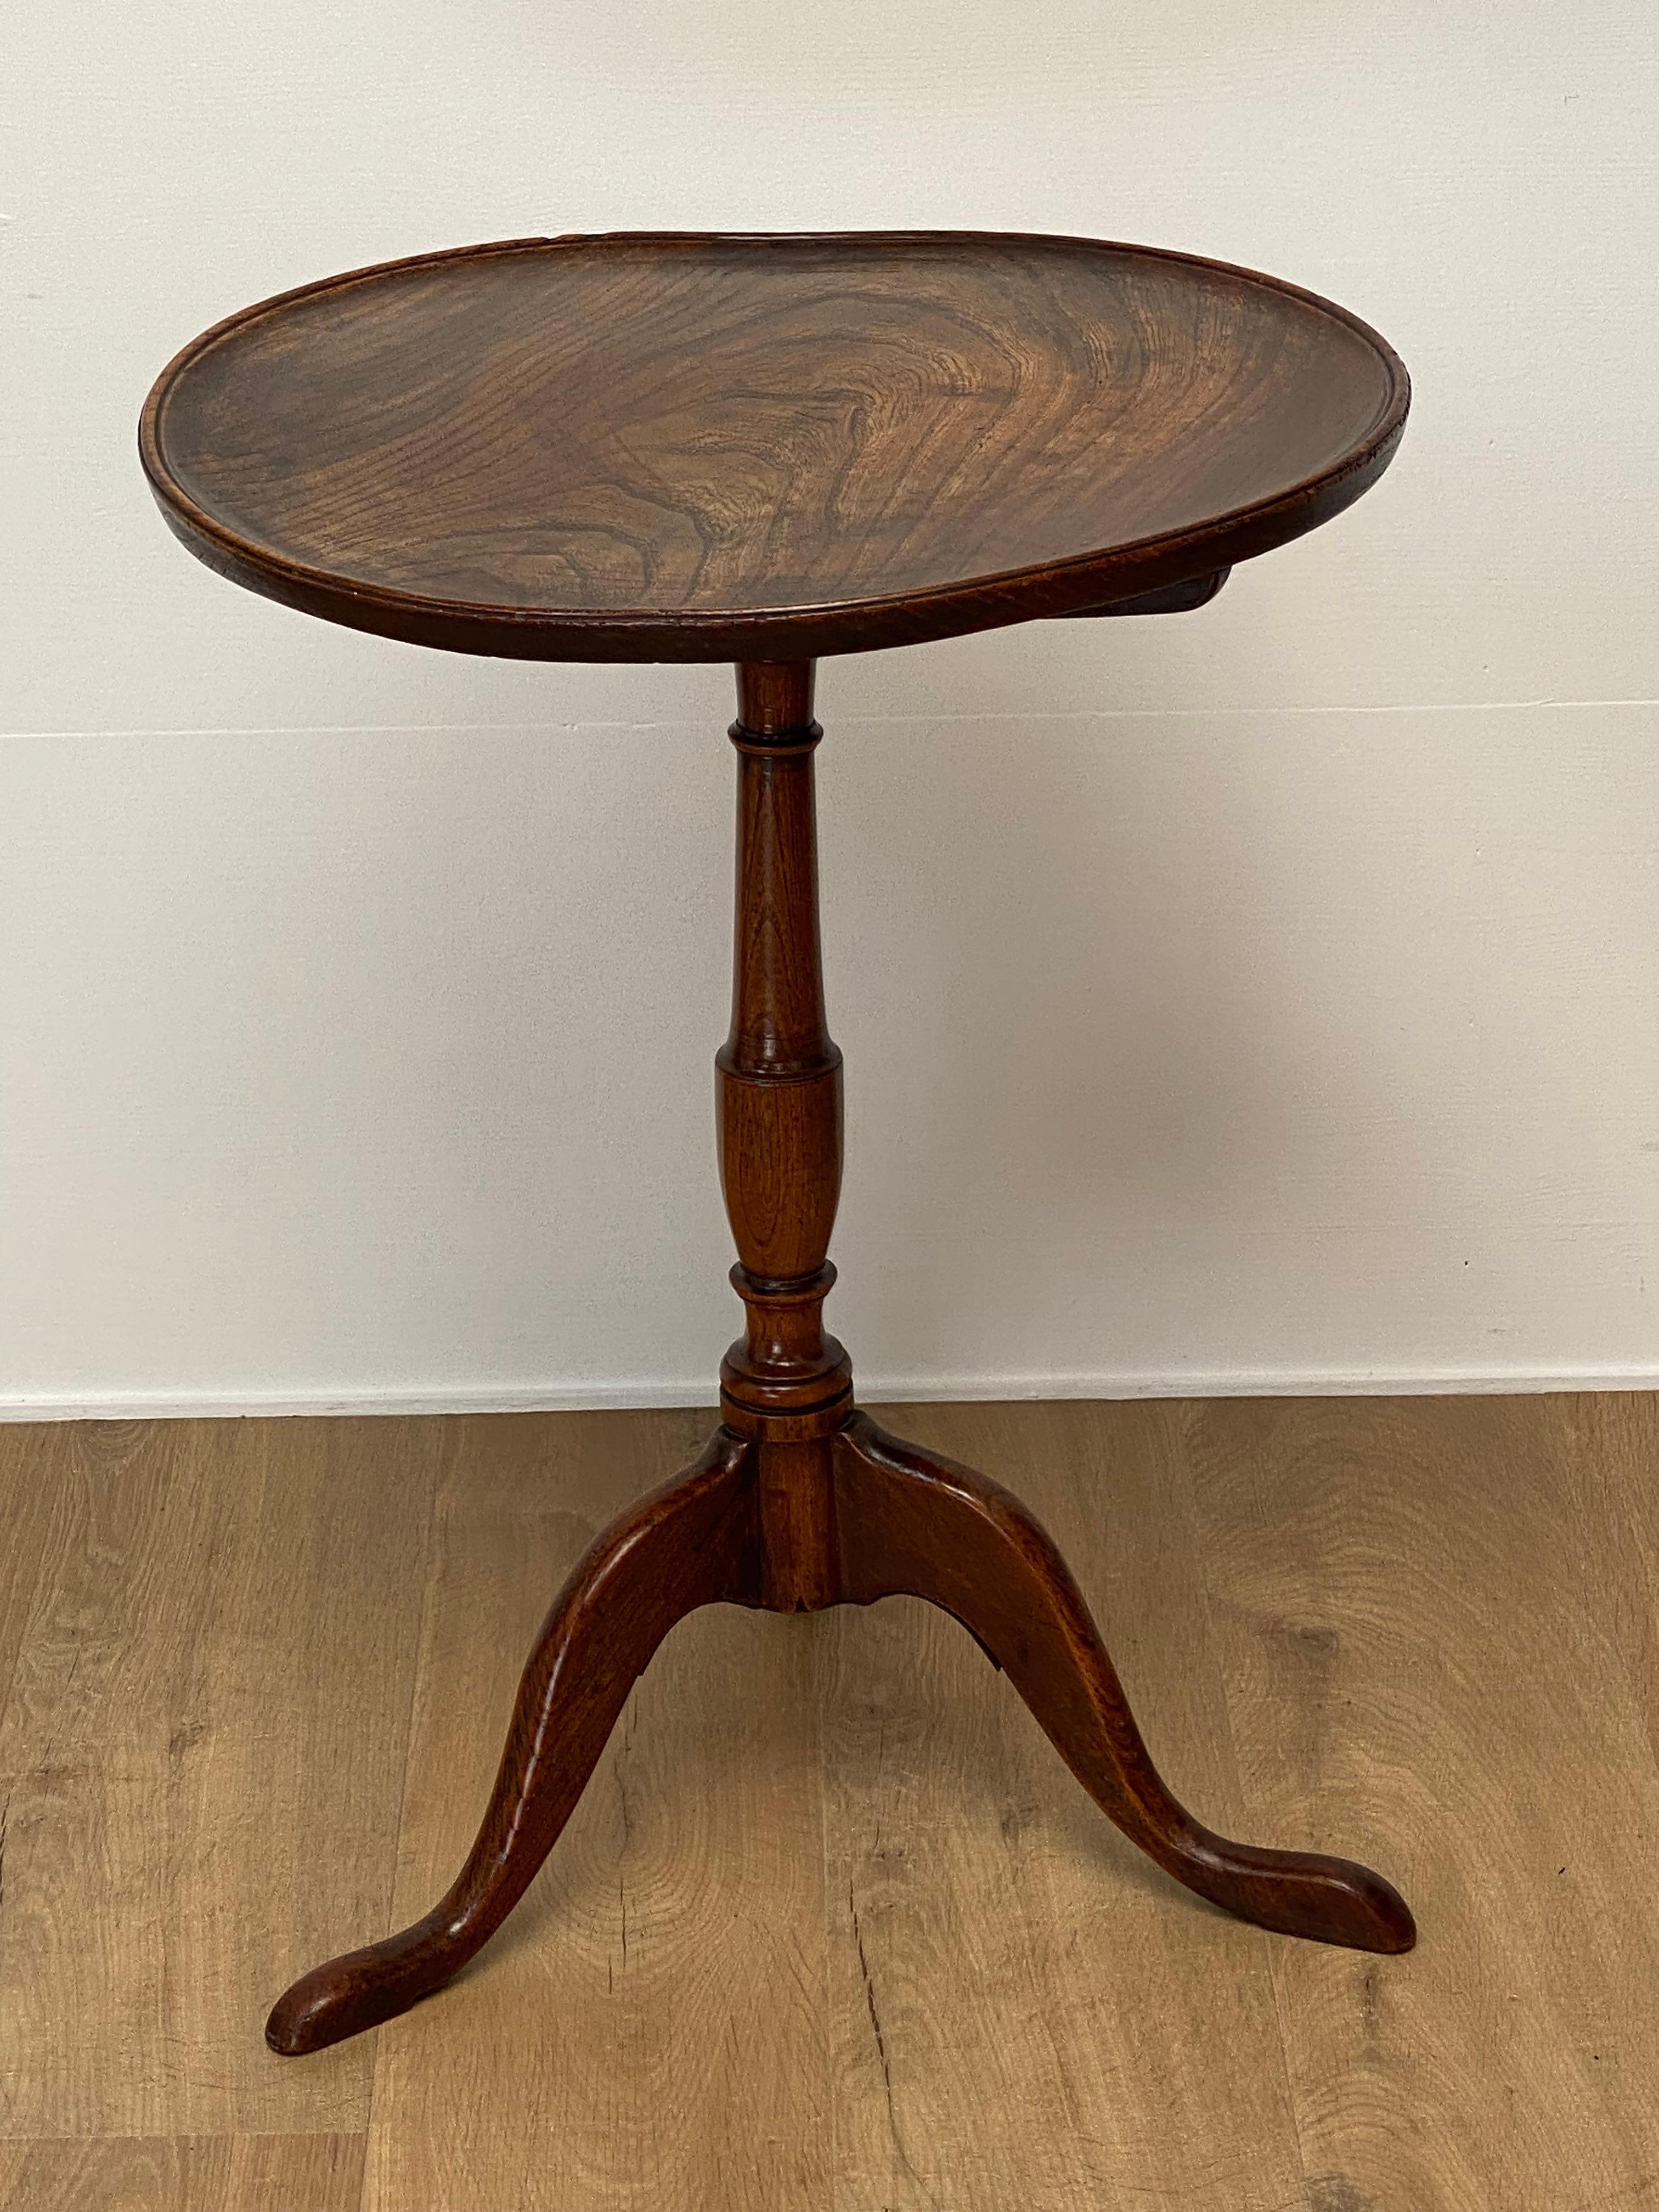 Ancienne table tripode en orme,
18 siècle, le plateau de la table est ondulé en raison de l'âge,
La patine ancienne du bois d'orme est superbe et chaleureuse,
petite table avec beaucoup de caractère